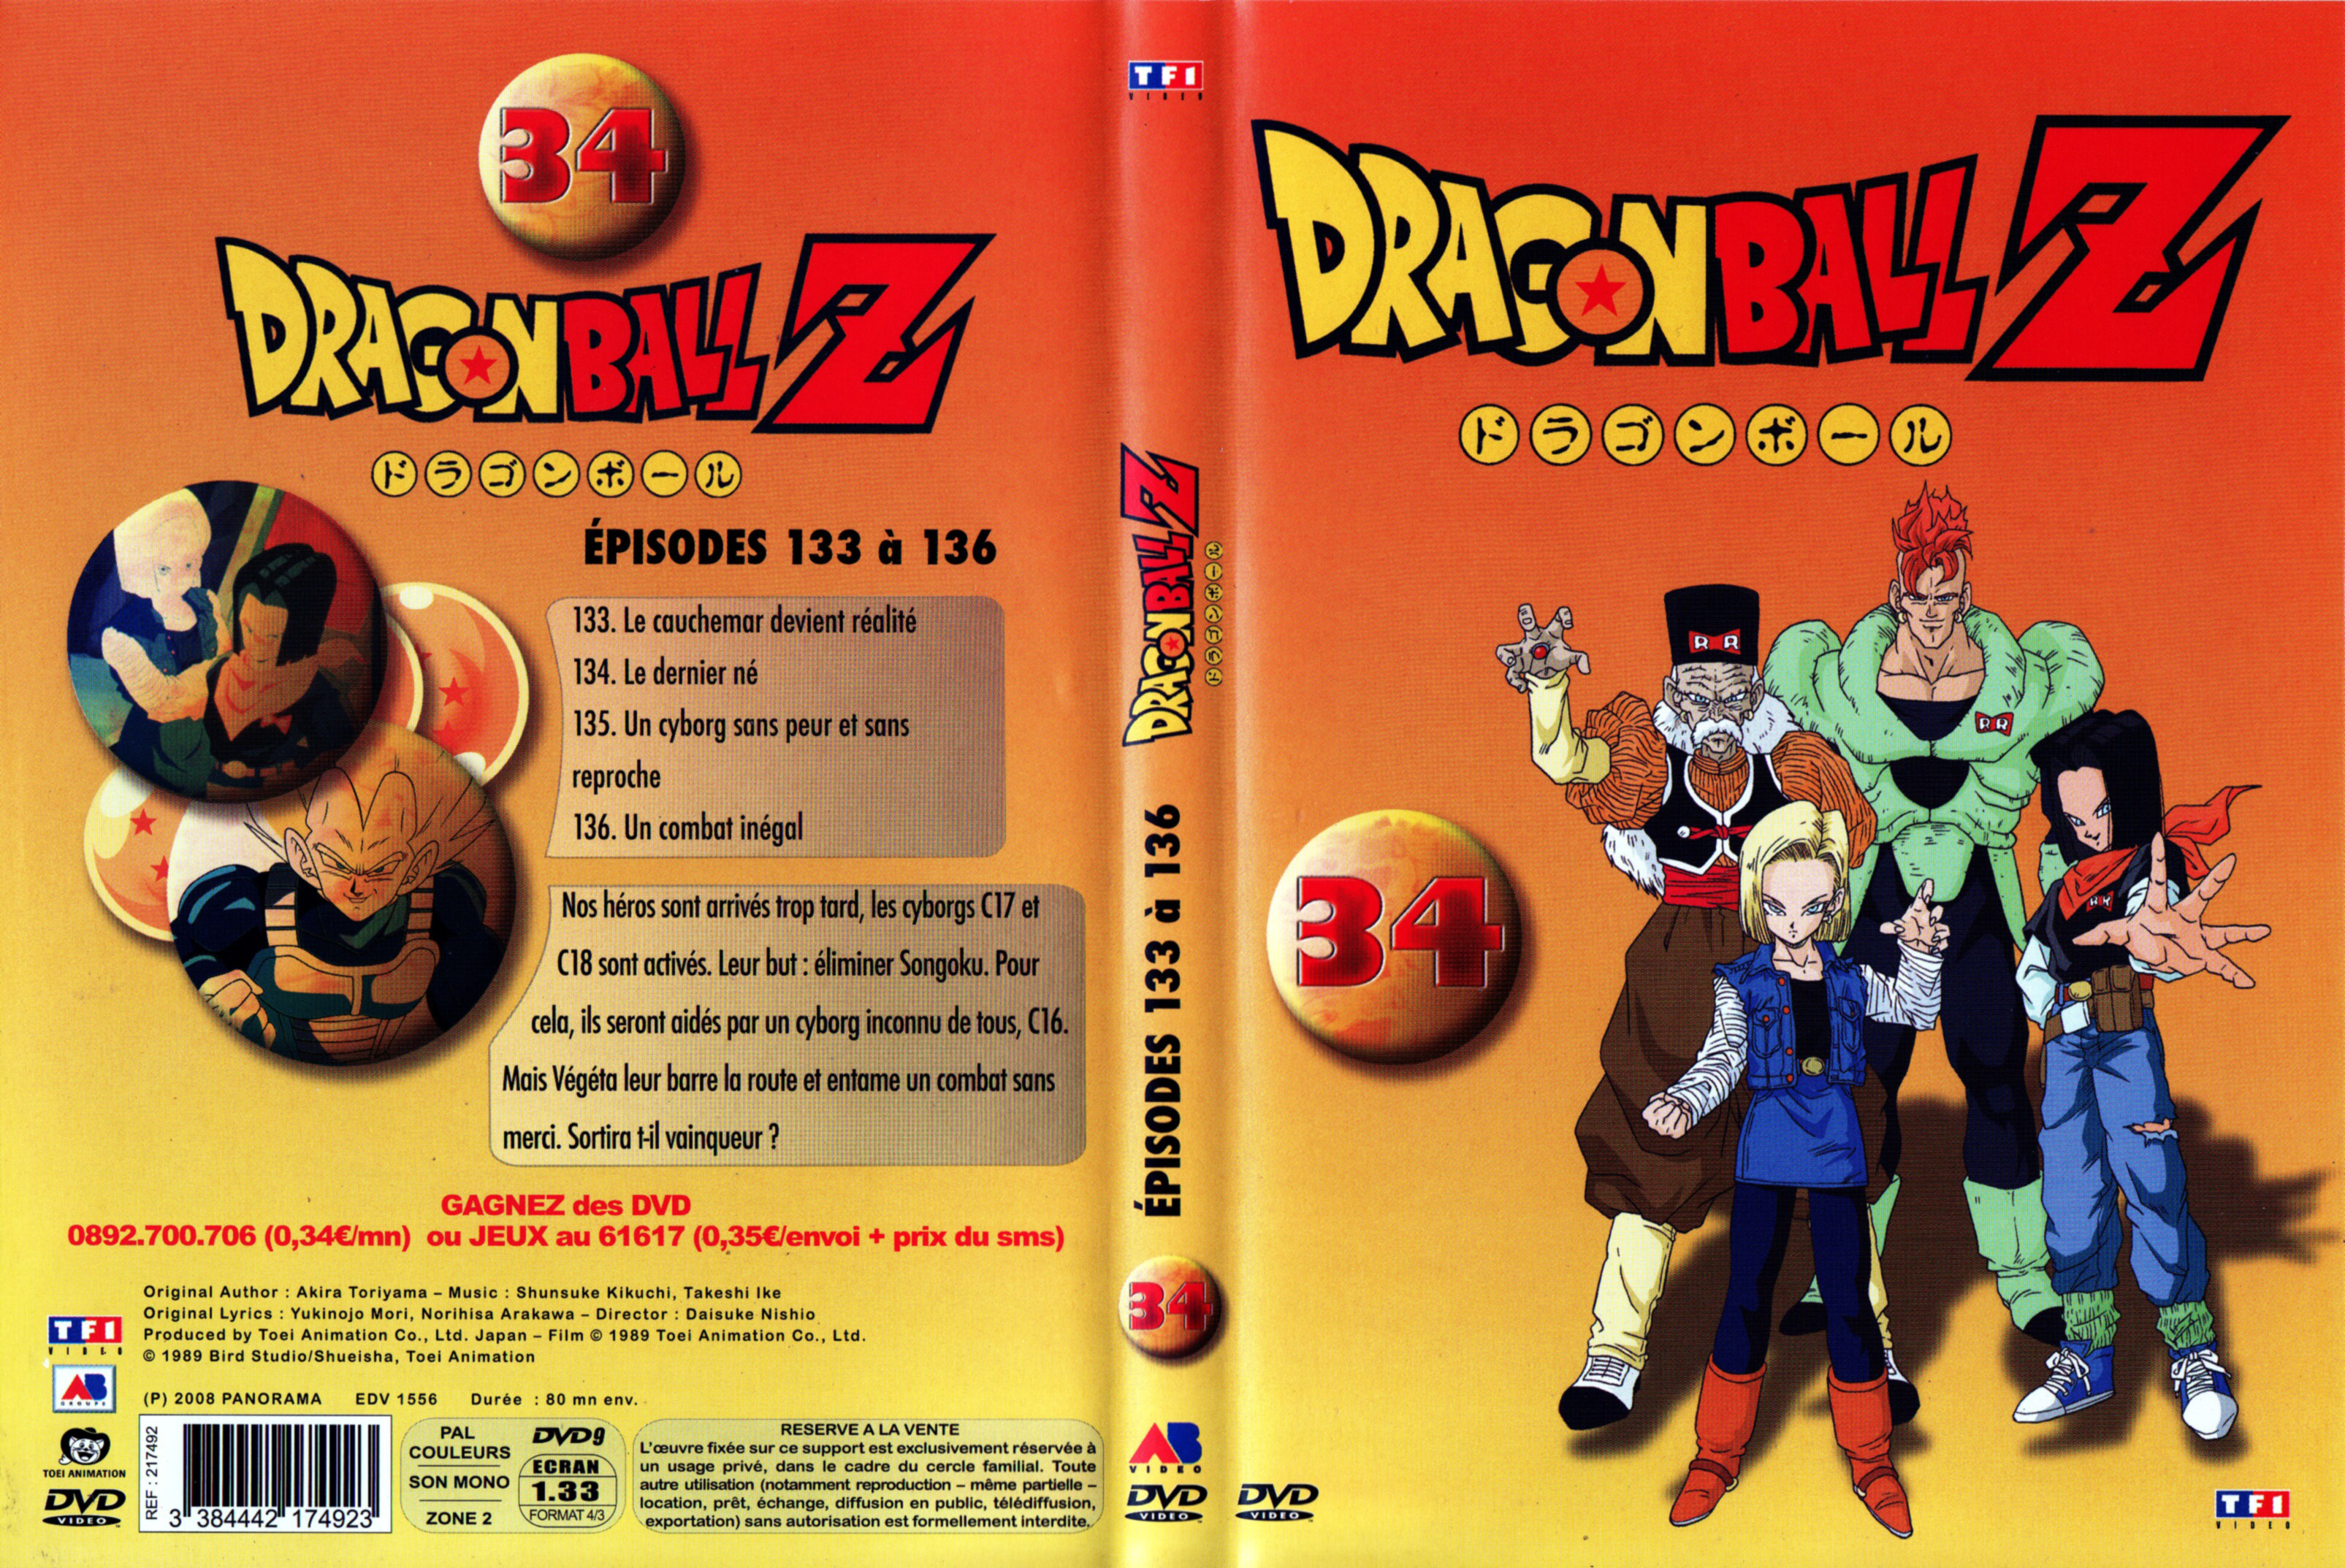 Jaquette DVD Dragon Ball Z vol 34 v2